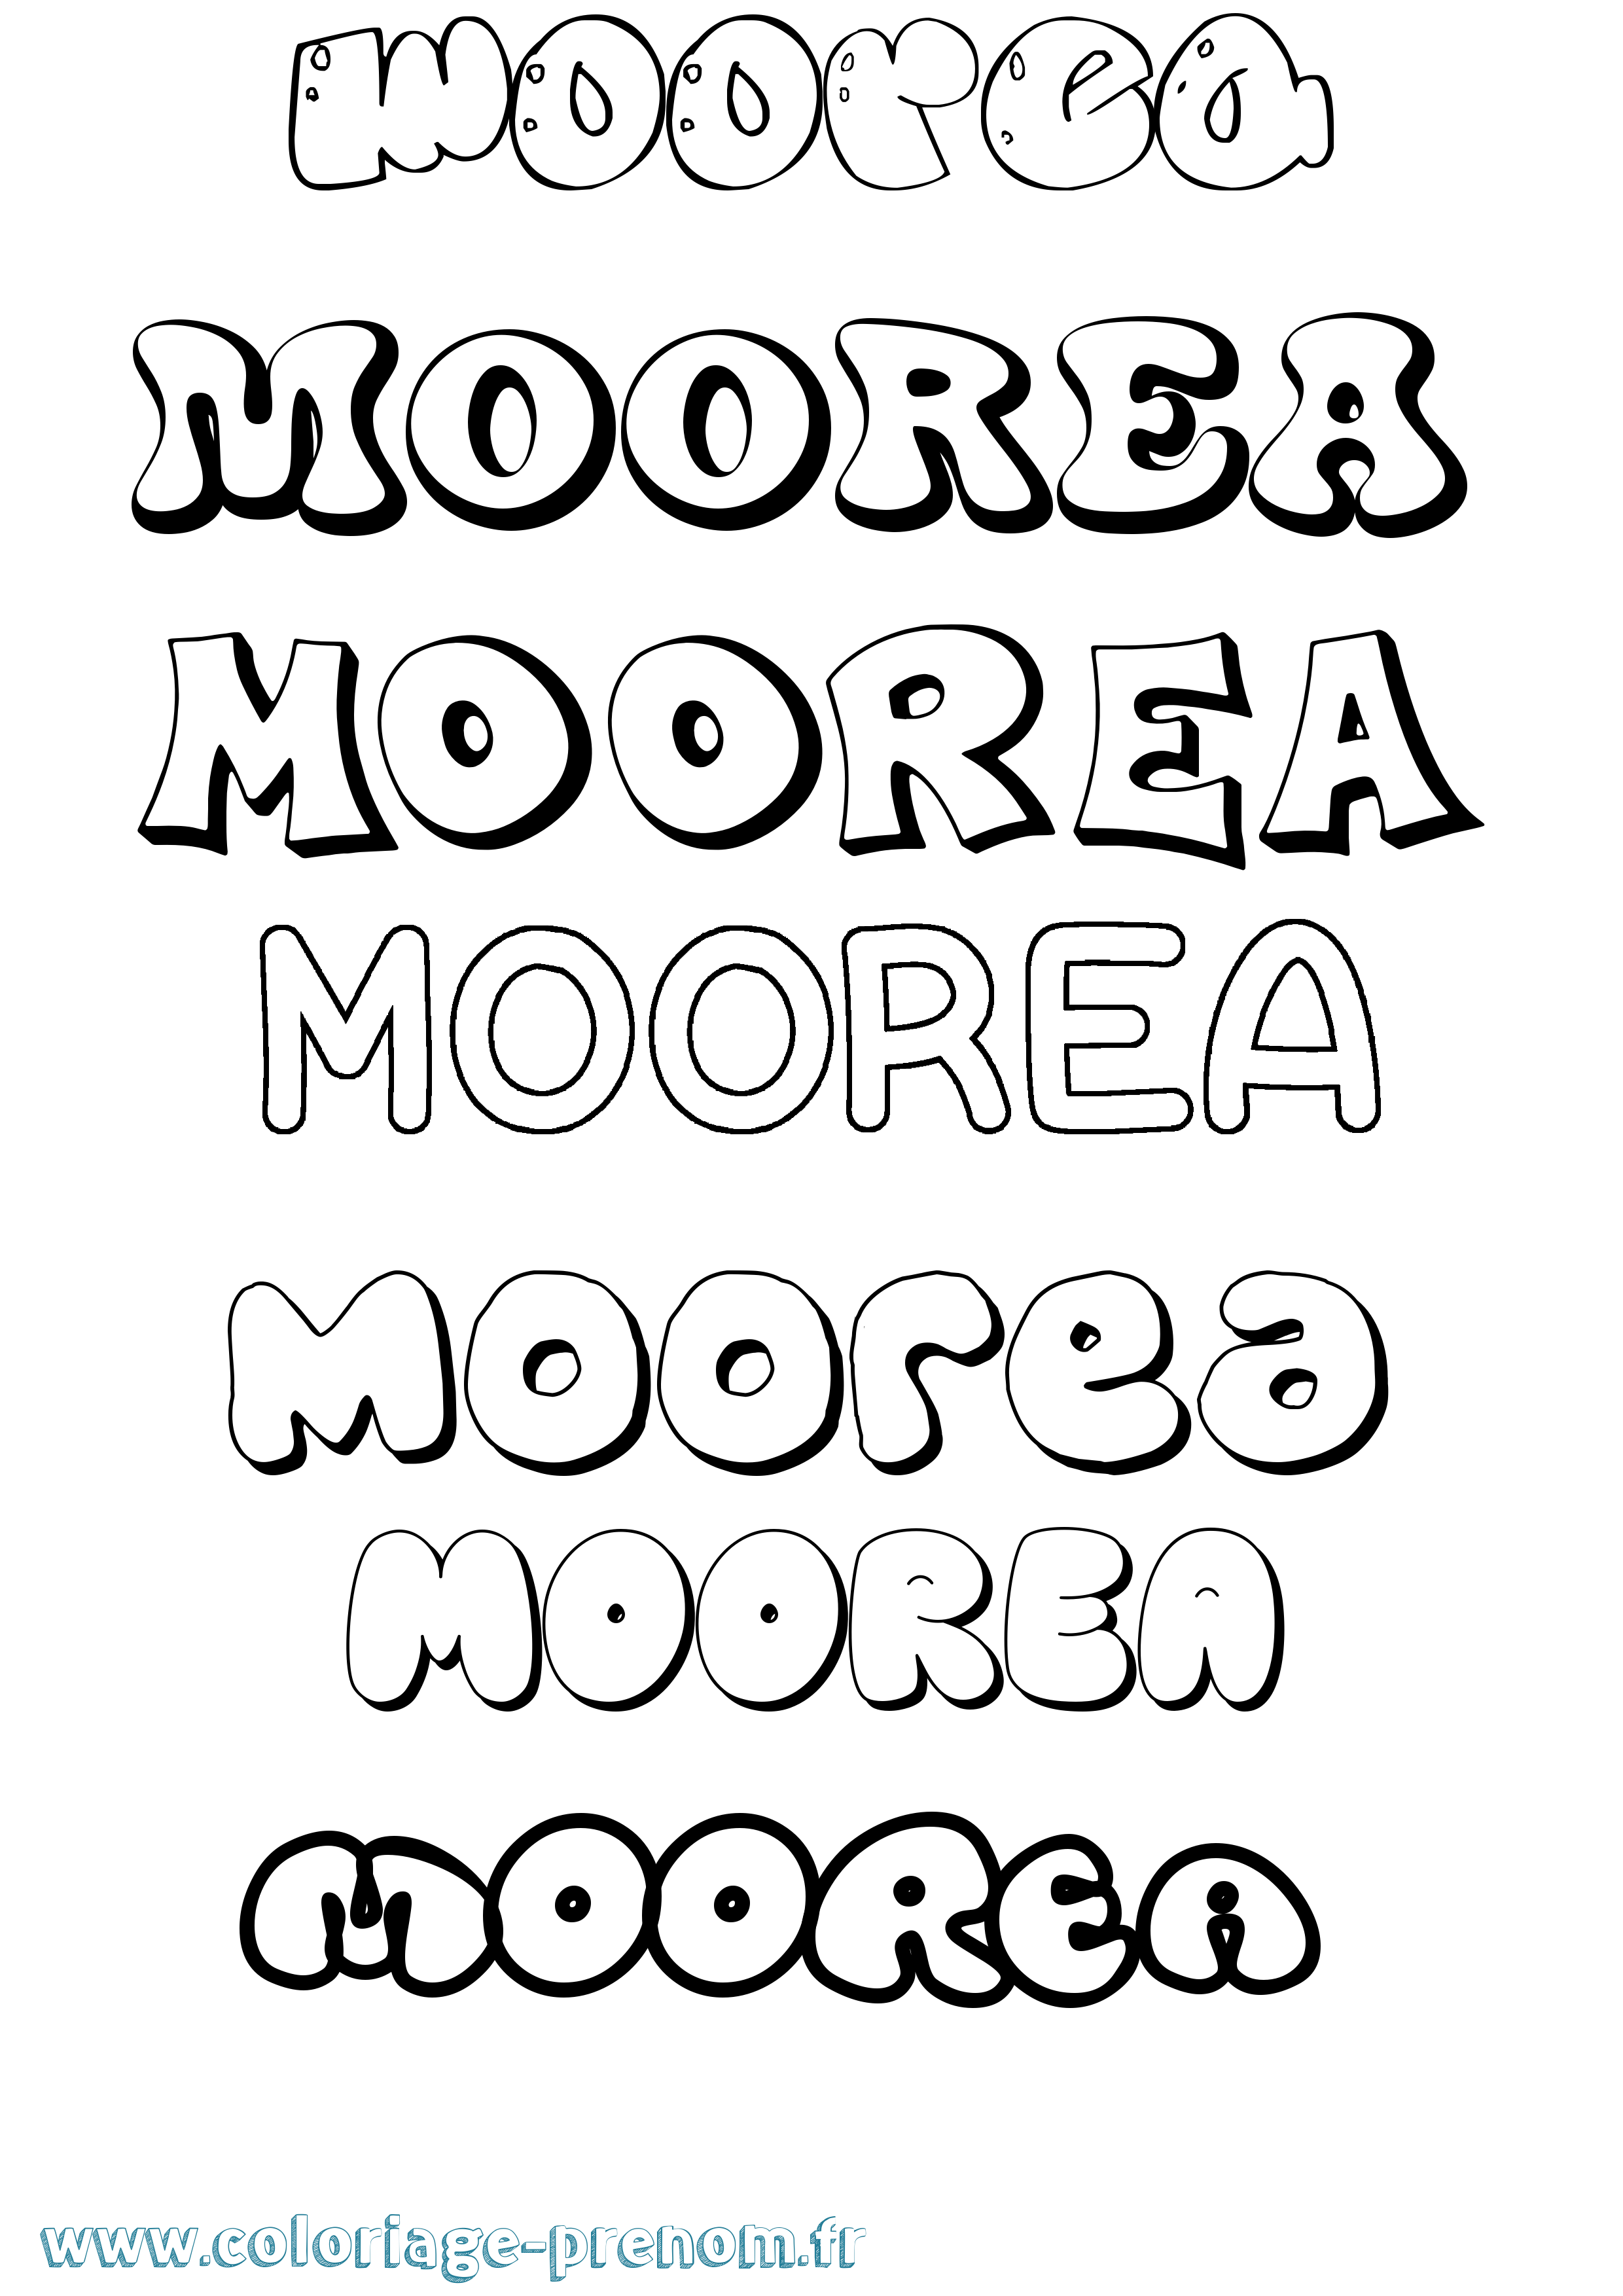 Coloriage prénom Moorea Bubble